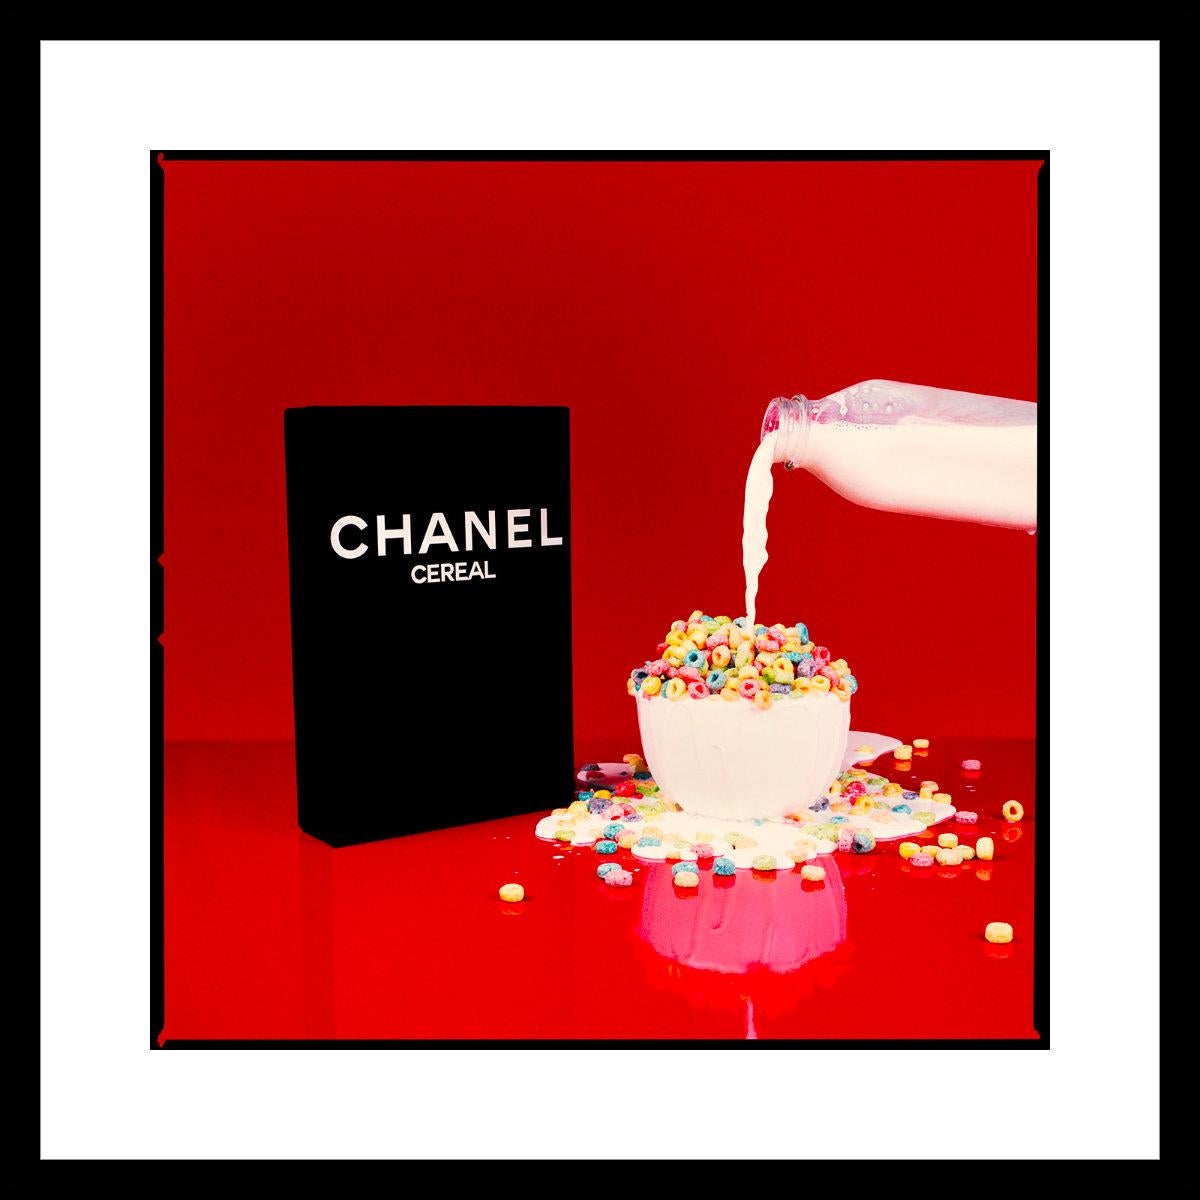 Tyler Shields - Chanel Cereal II, Fotografie 2021, gedruckt nach im Angebot 1